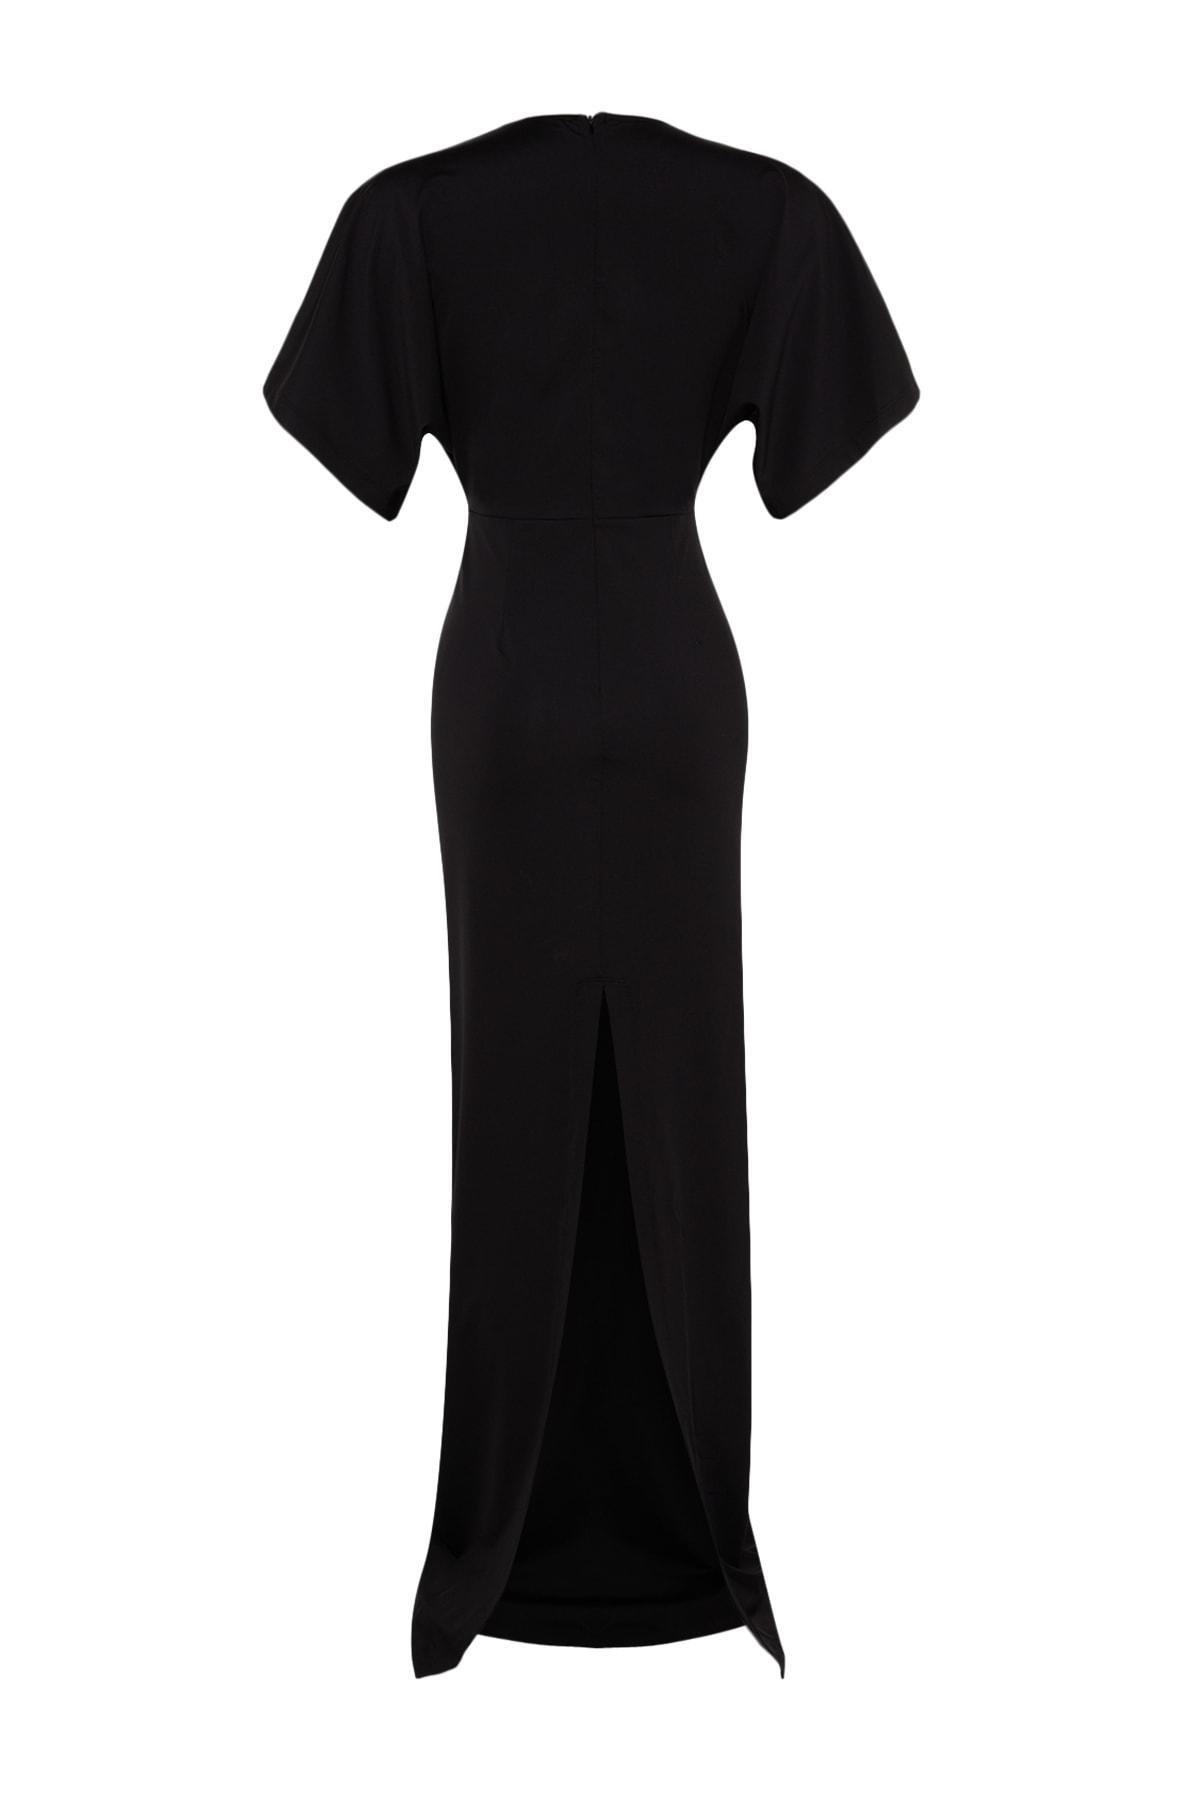 Trendyol - Black Shift V-Neck Occasionwear Dress